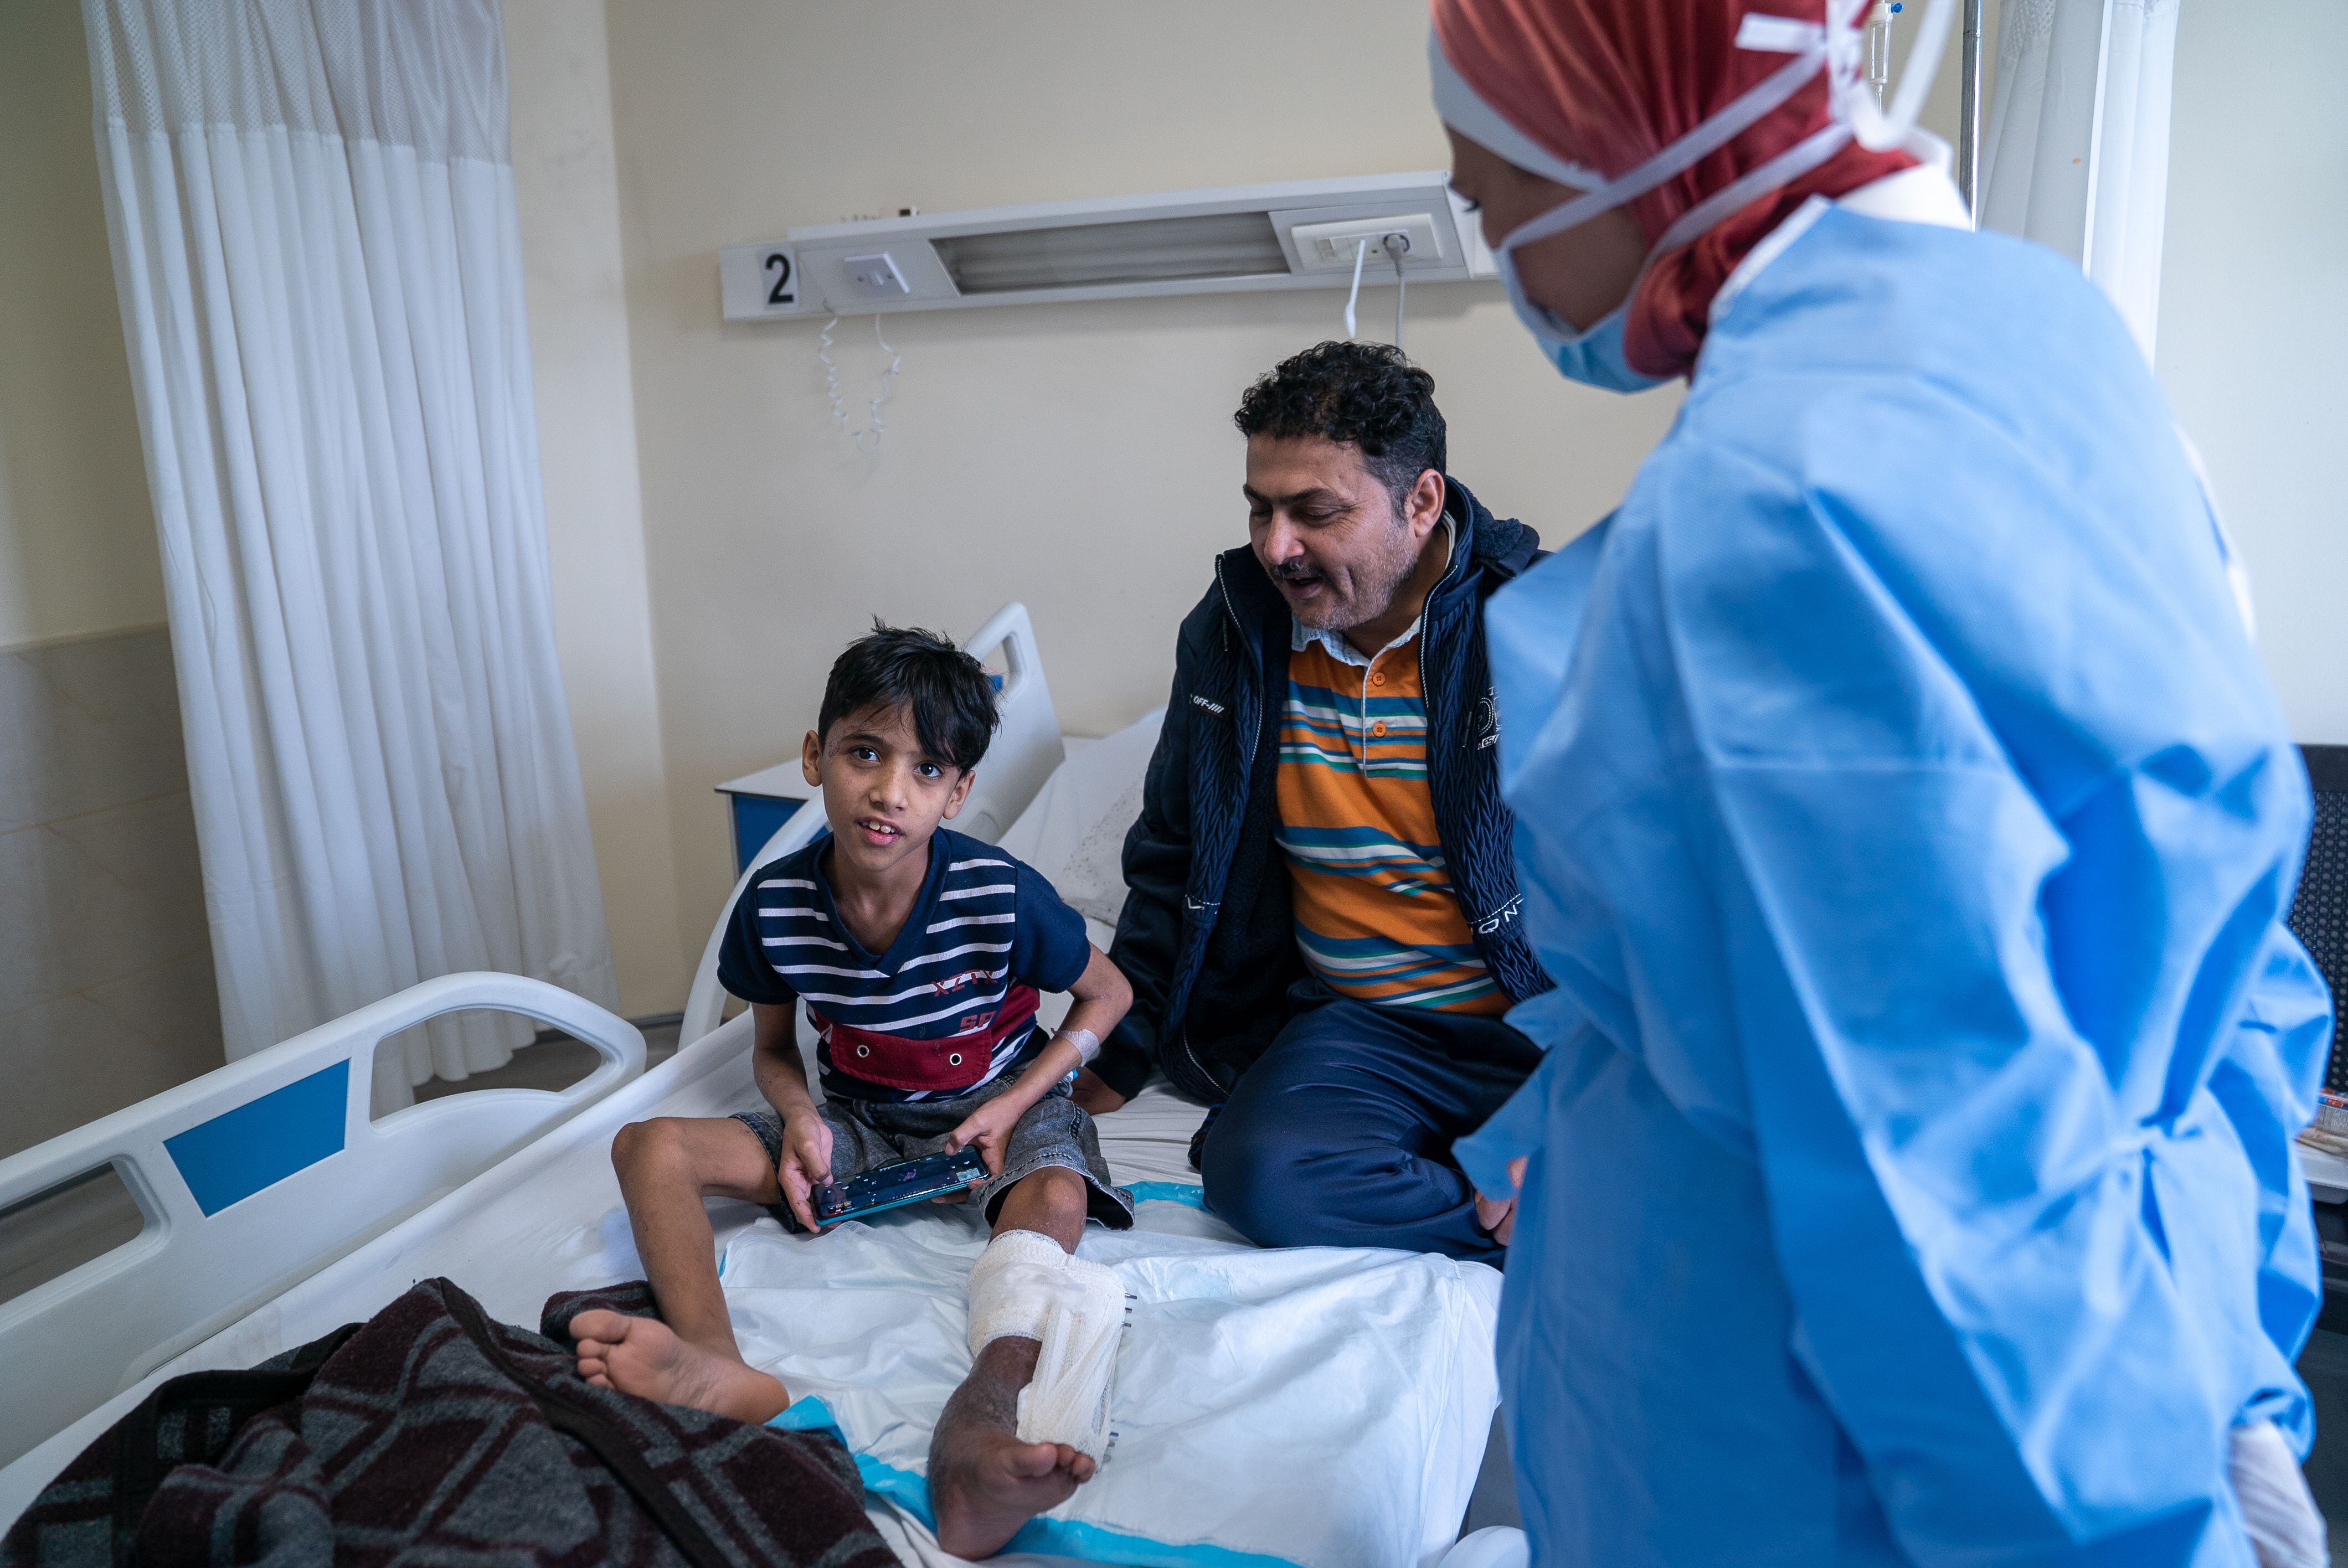 Riad Mohamed Alí, yemení de 10 años, y su padre son atendidos en una habitación del hospital por la doctora iraquí Nagham Hussein.